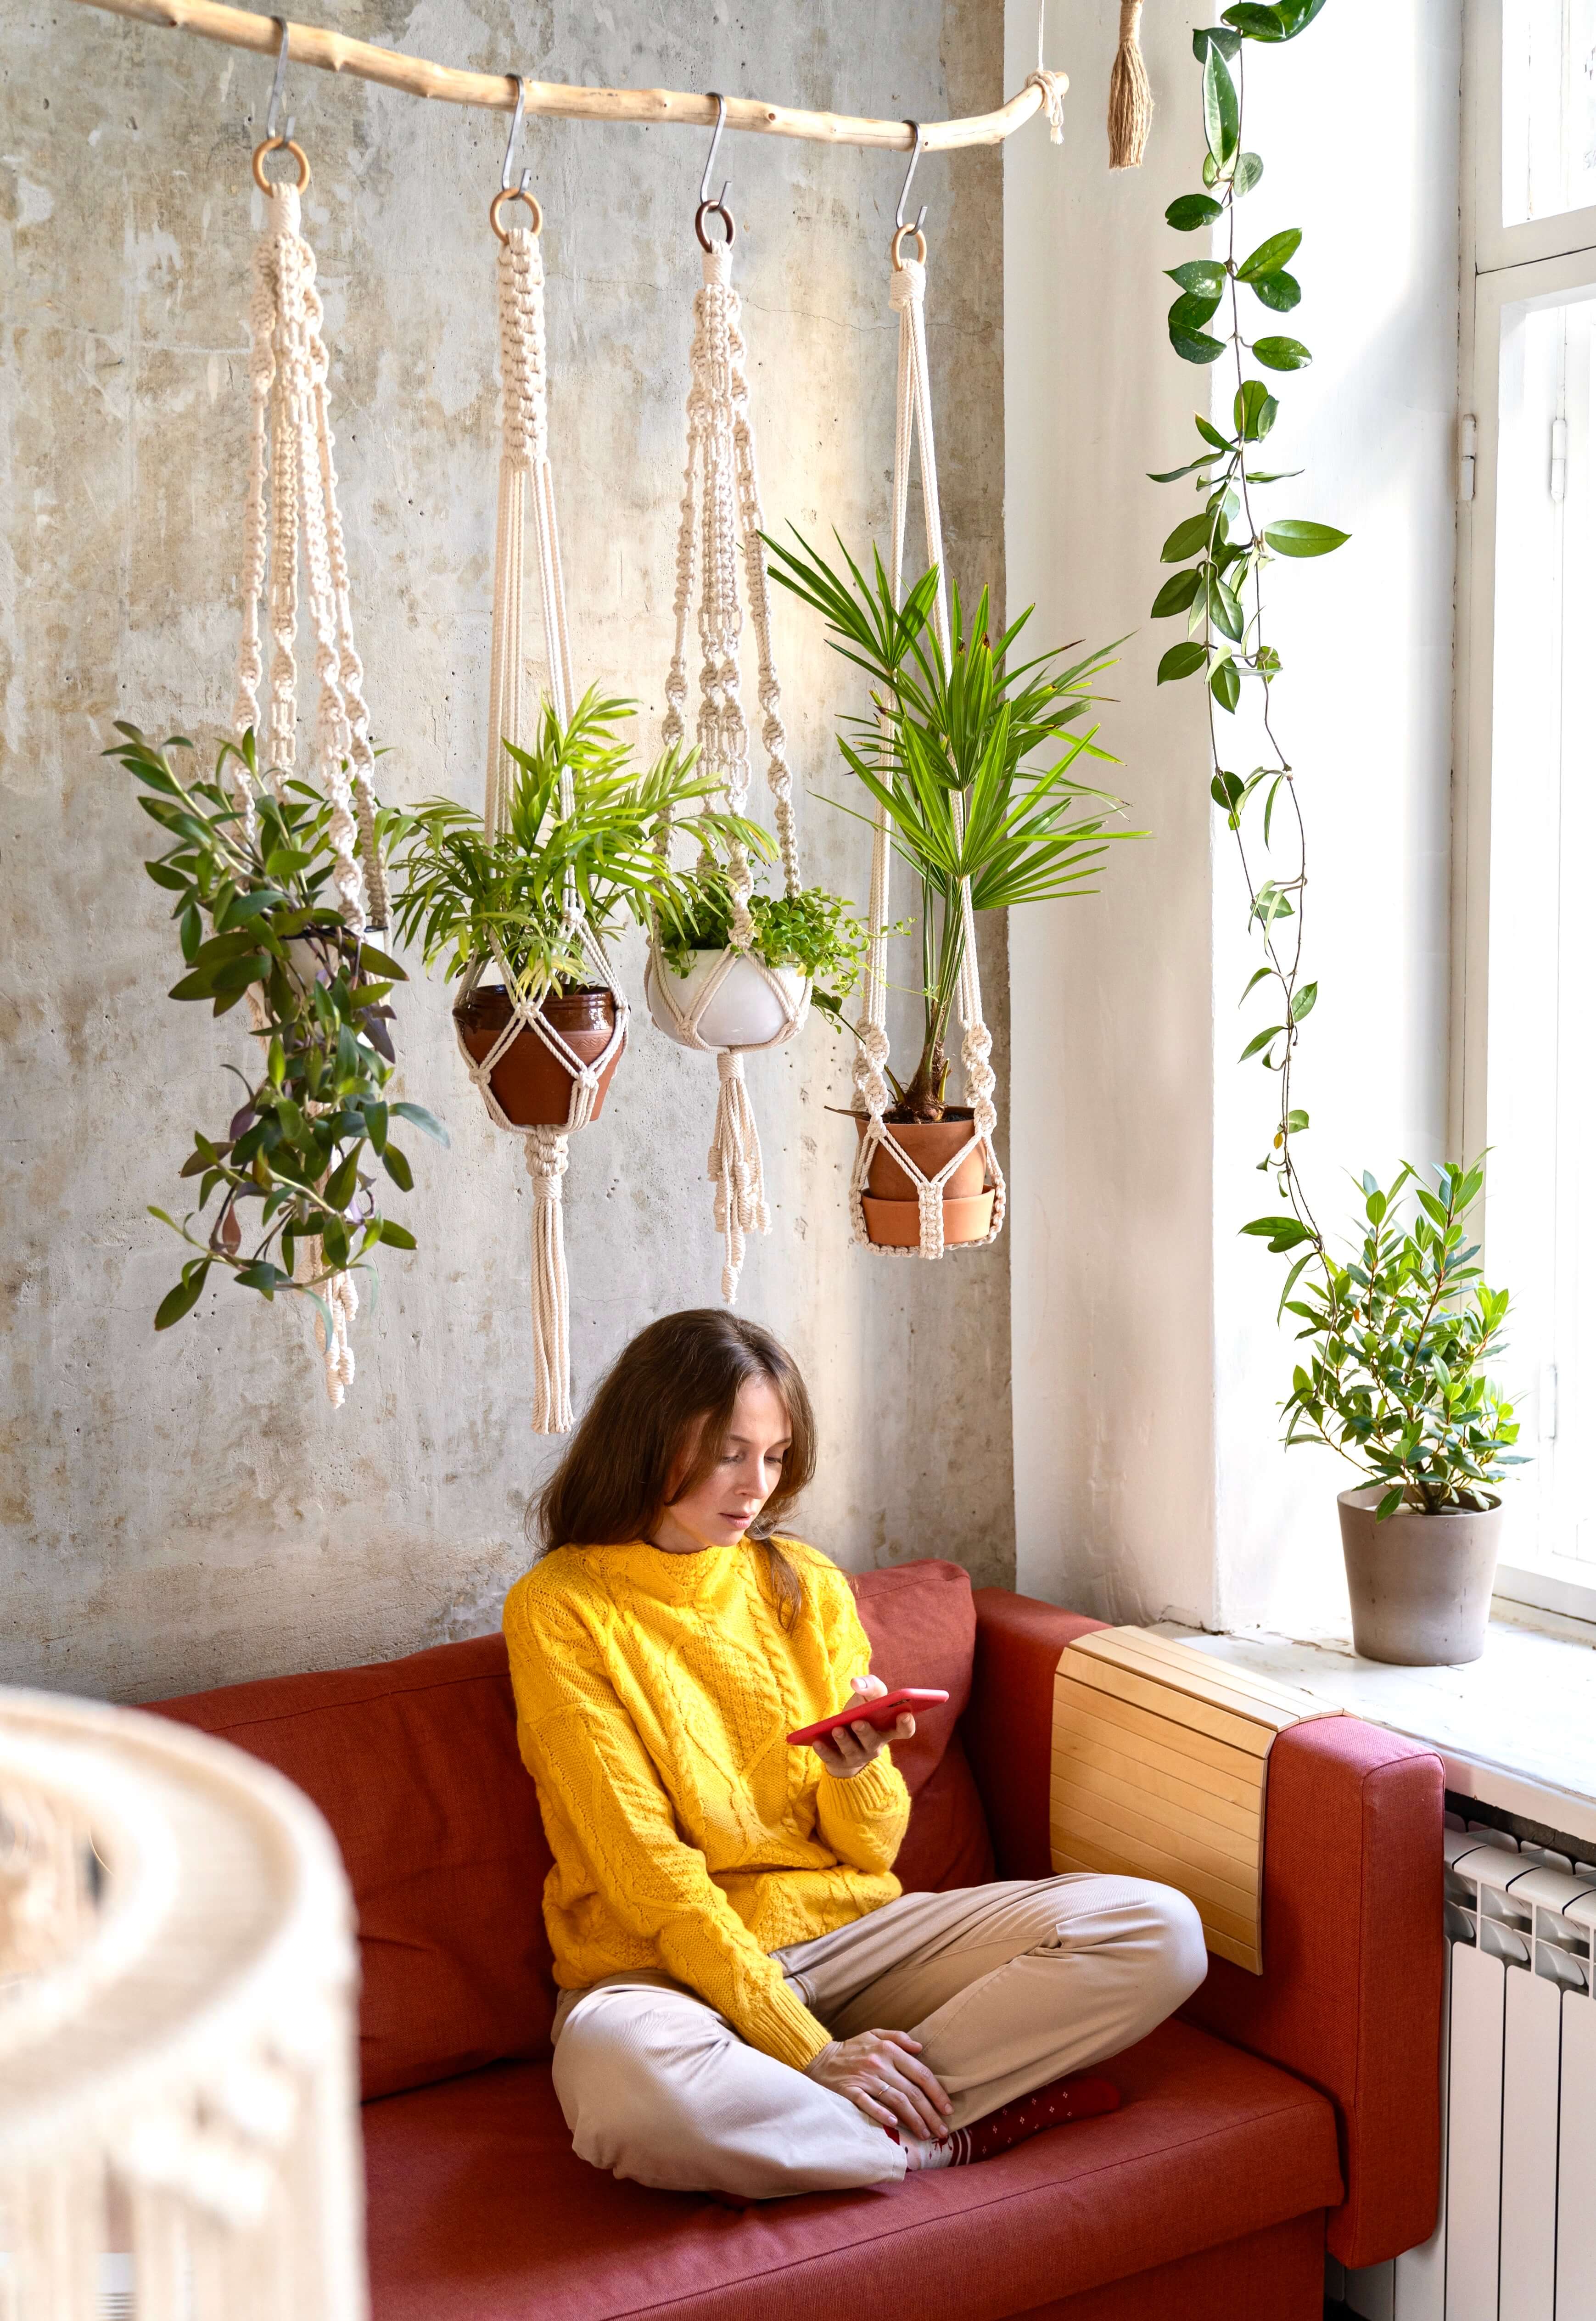 Zena pri okne s rastlinami na makrame